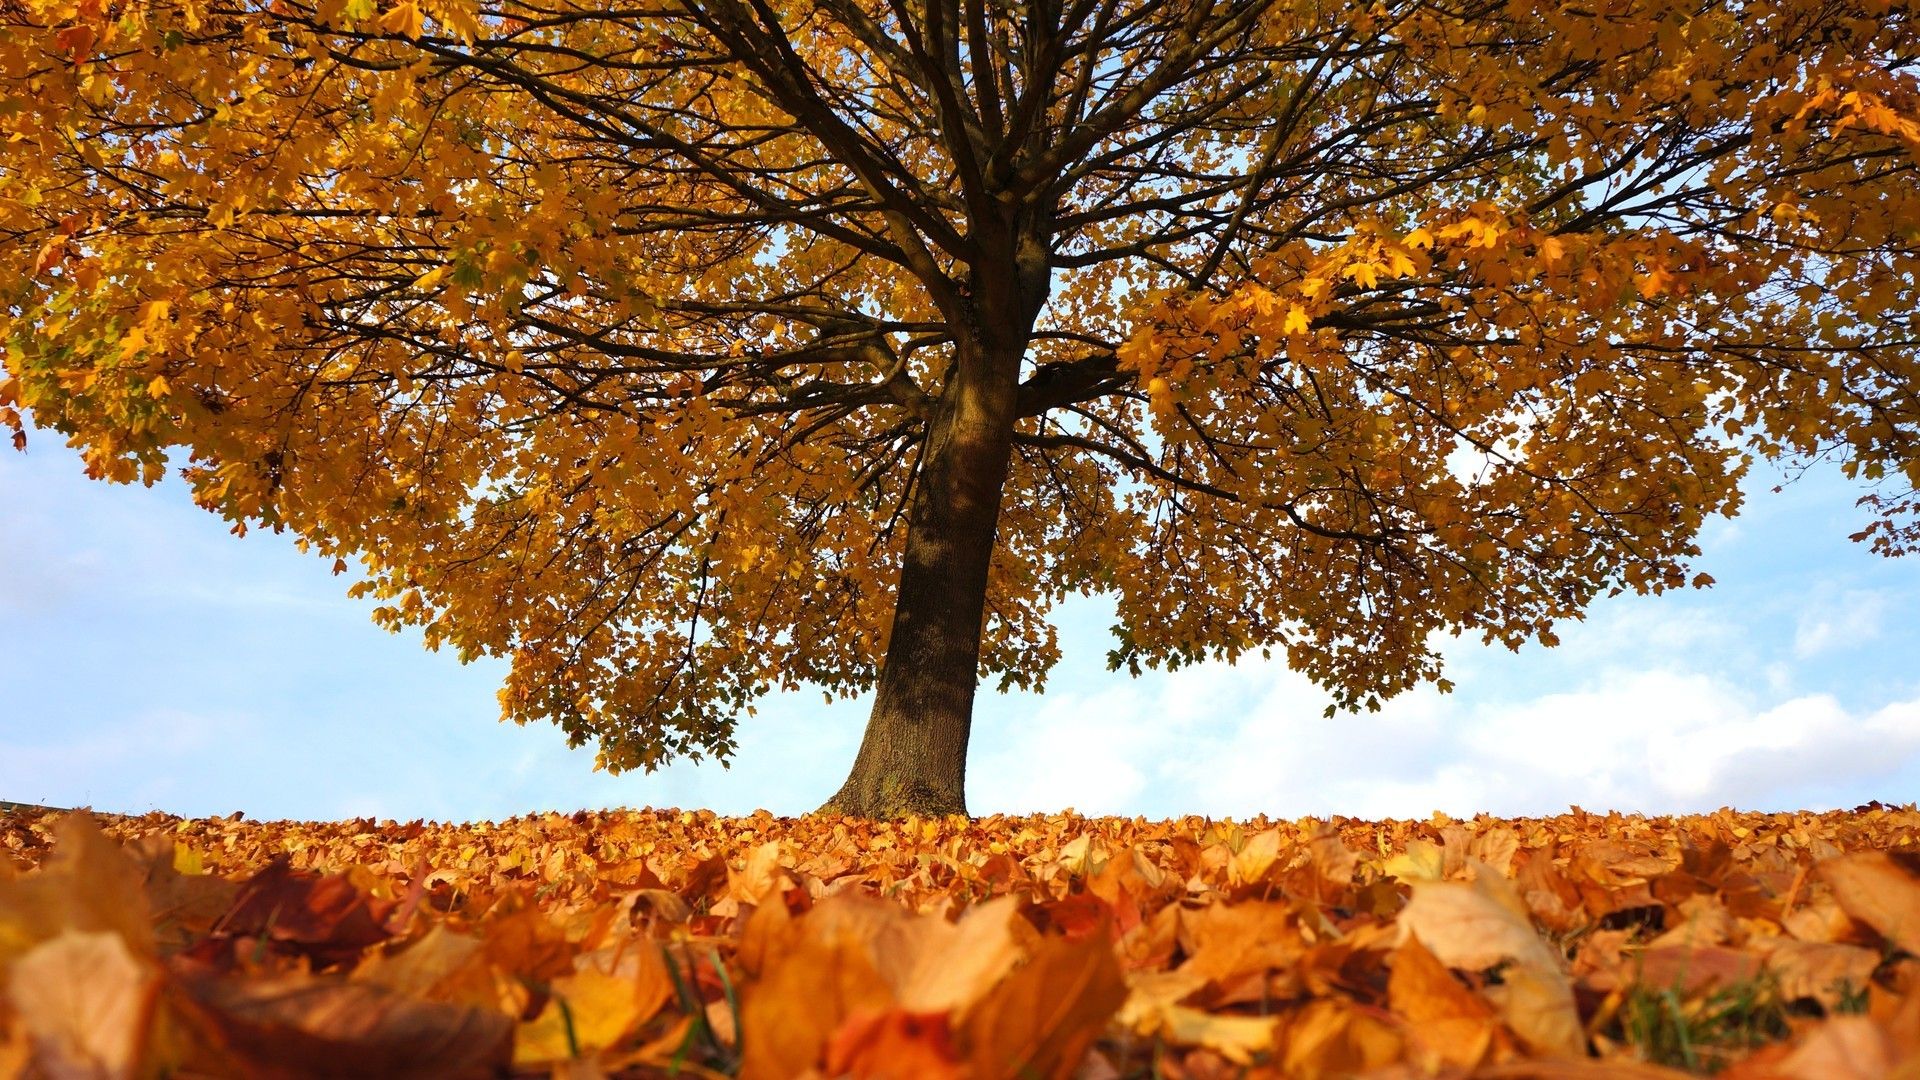 秋季一棵树与大自然和谐共生系列桌面壁纸